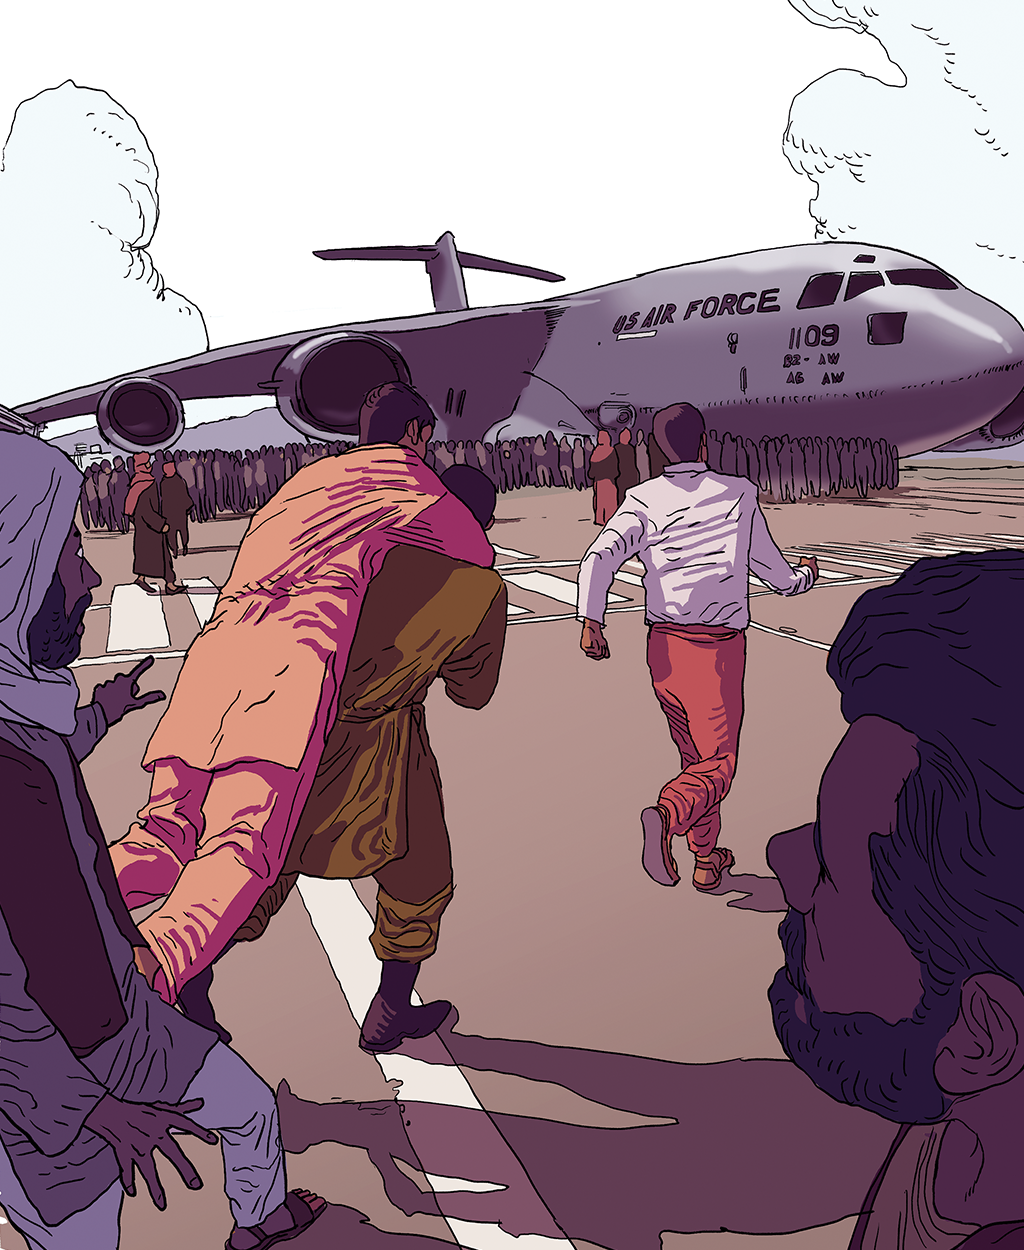 Ilustração mulhares de afegãos tentando fugir do país em avião militar americano.